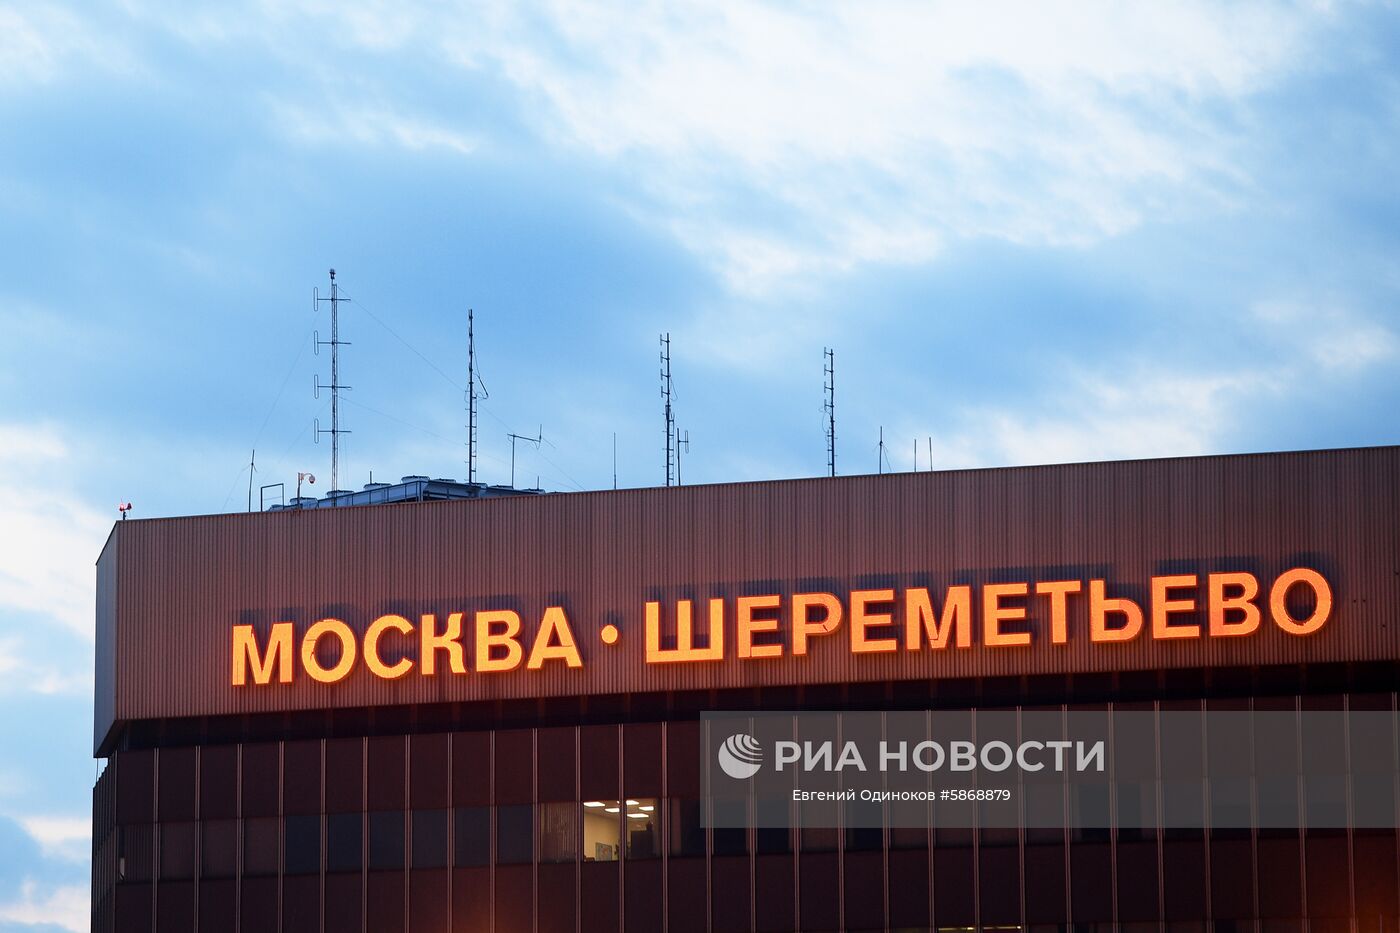 Ситуация в аэропорту Шереметьево